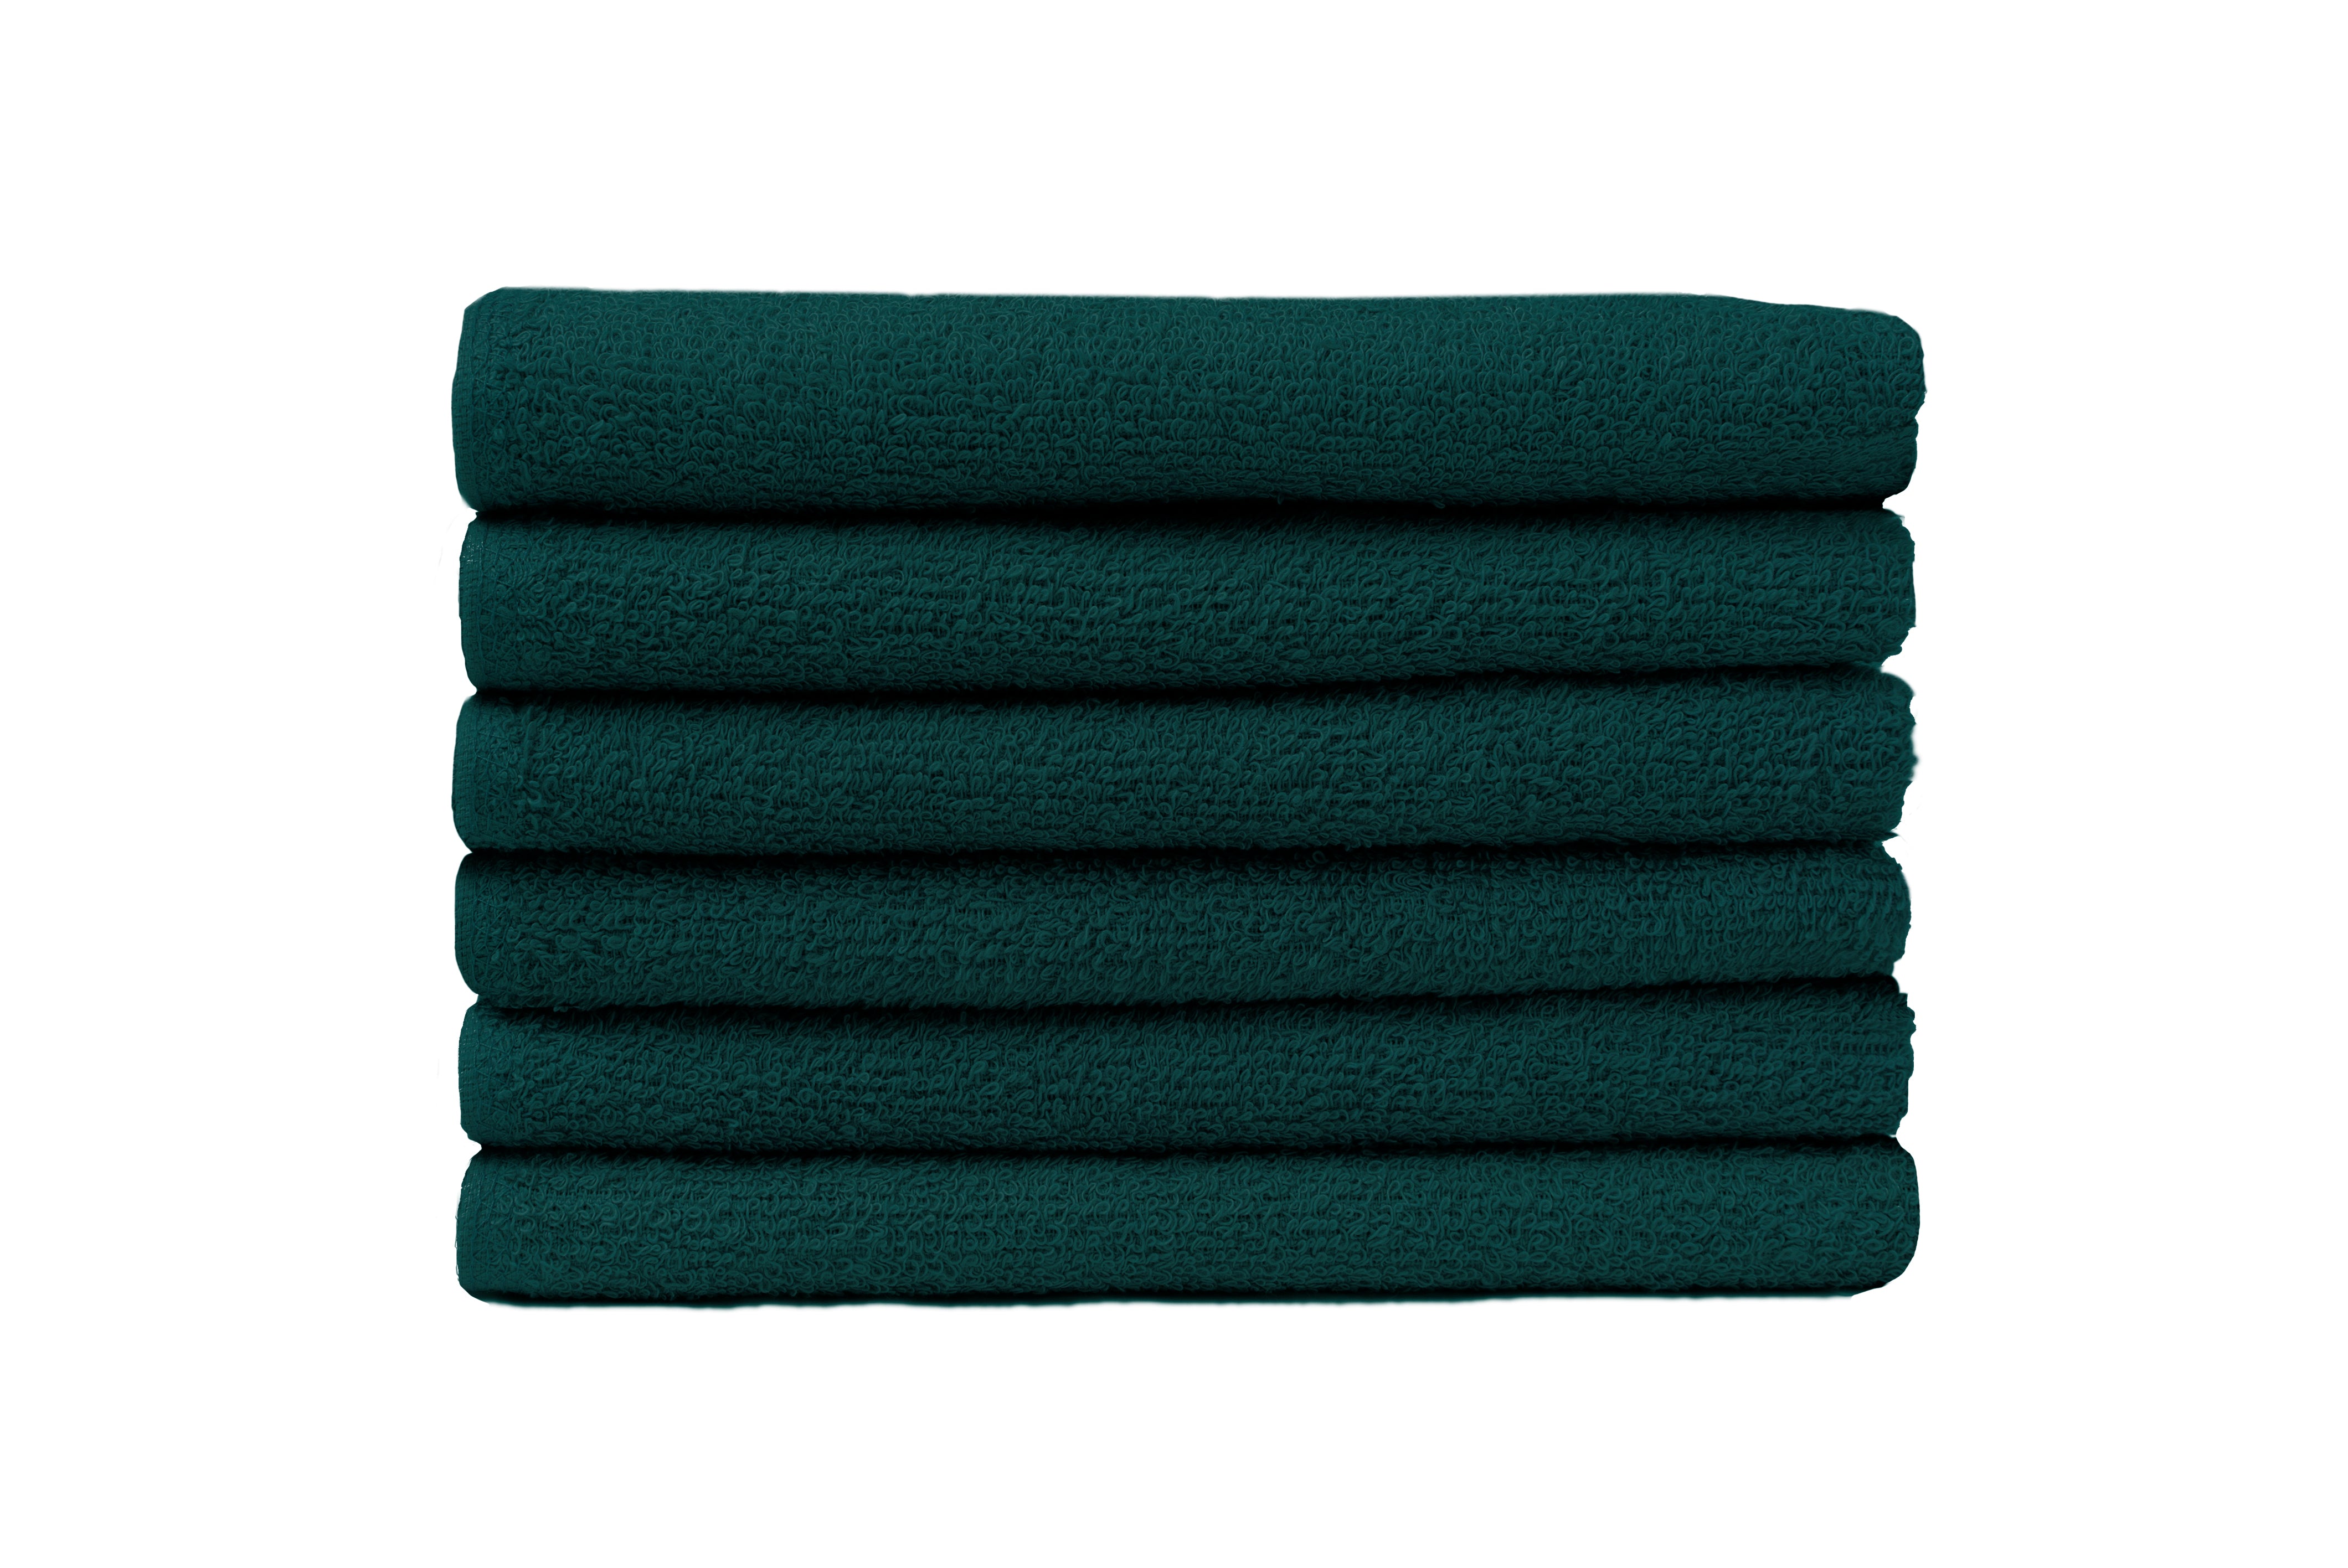 Partex Bleach Guard Royale™ Towels